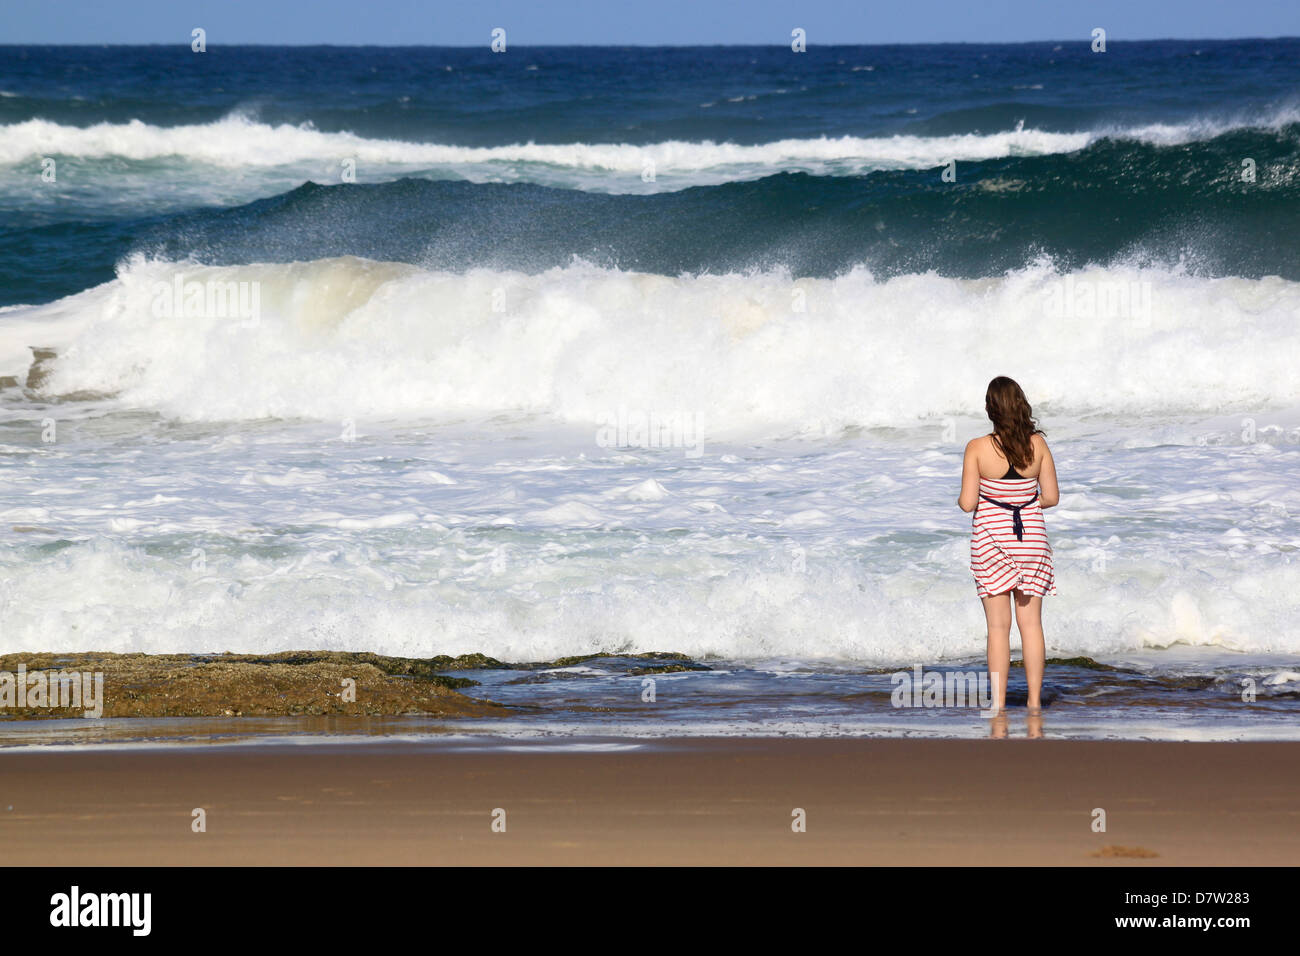 Une jeune femme se distingue par le fracas des vagues sur la plage, Sainte-Lucie, zones humides Kwa-Zulu Natal, Afrique du Sud Banque D'Images